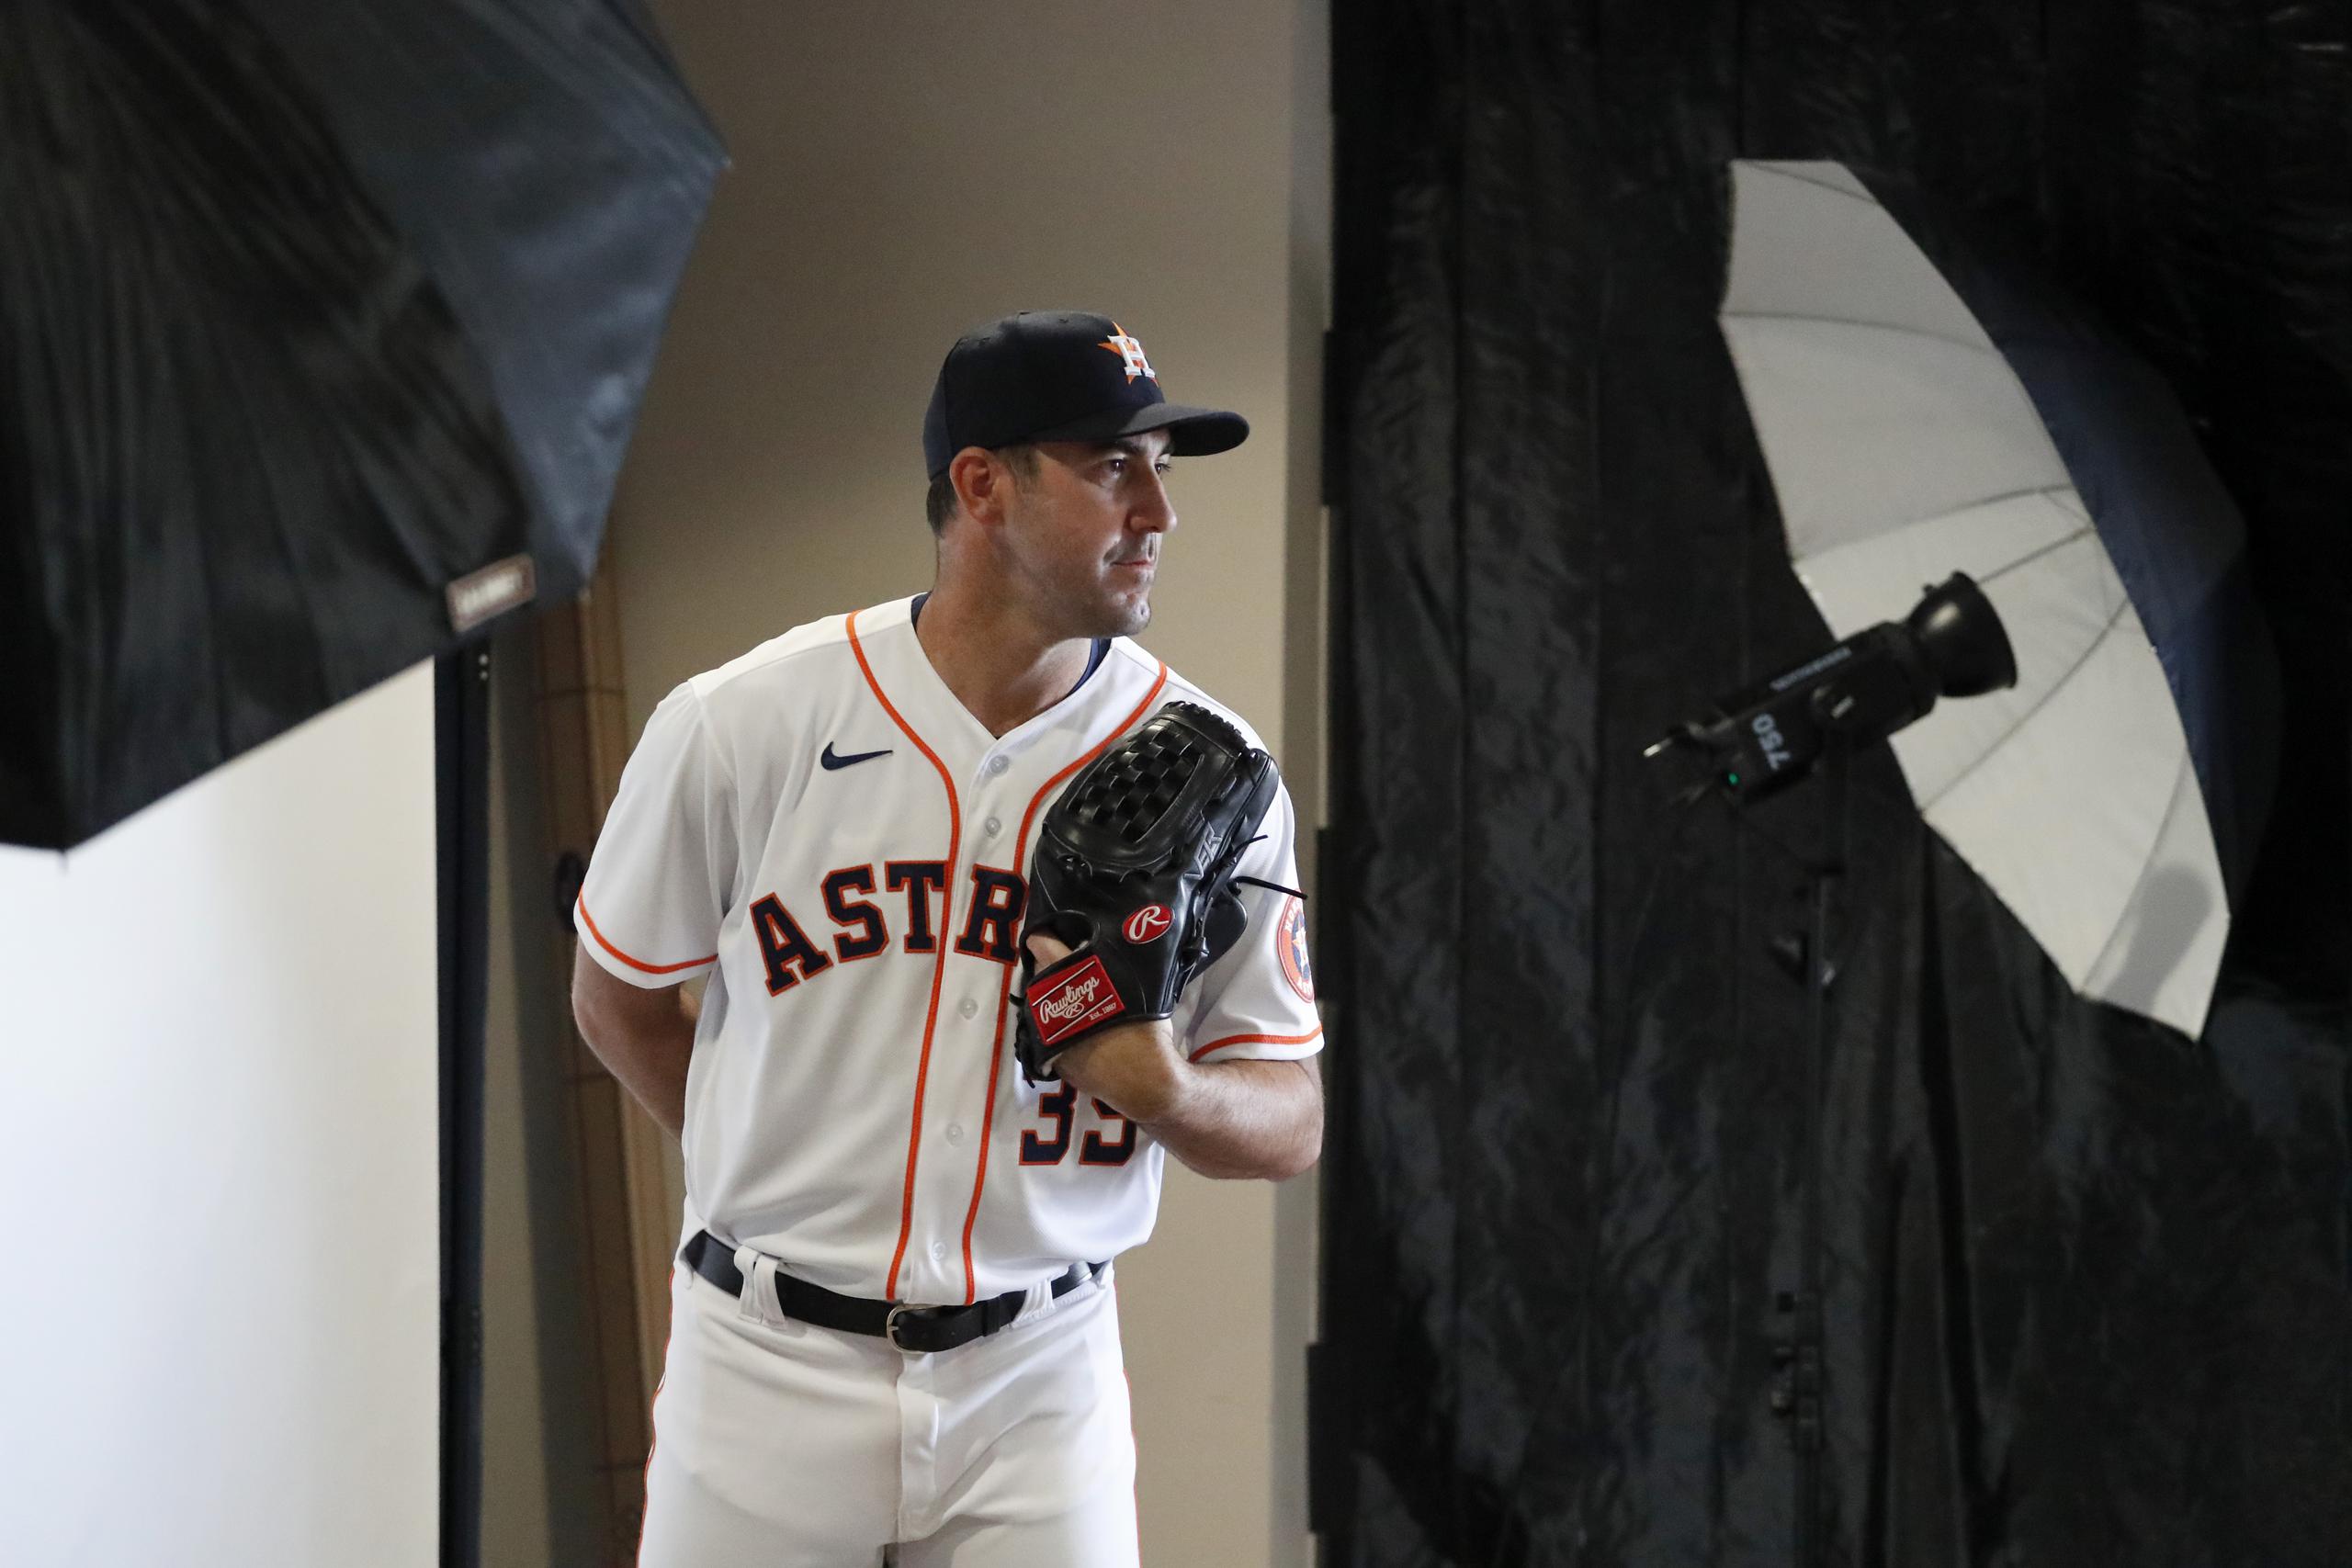 El pitcher de los Astros de Houston Justin Verlander participar de una sesión de fotos durante los entrenamientos de primavera.